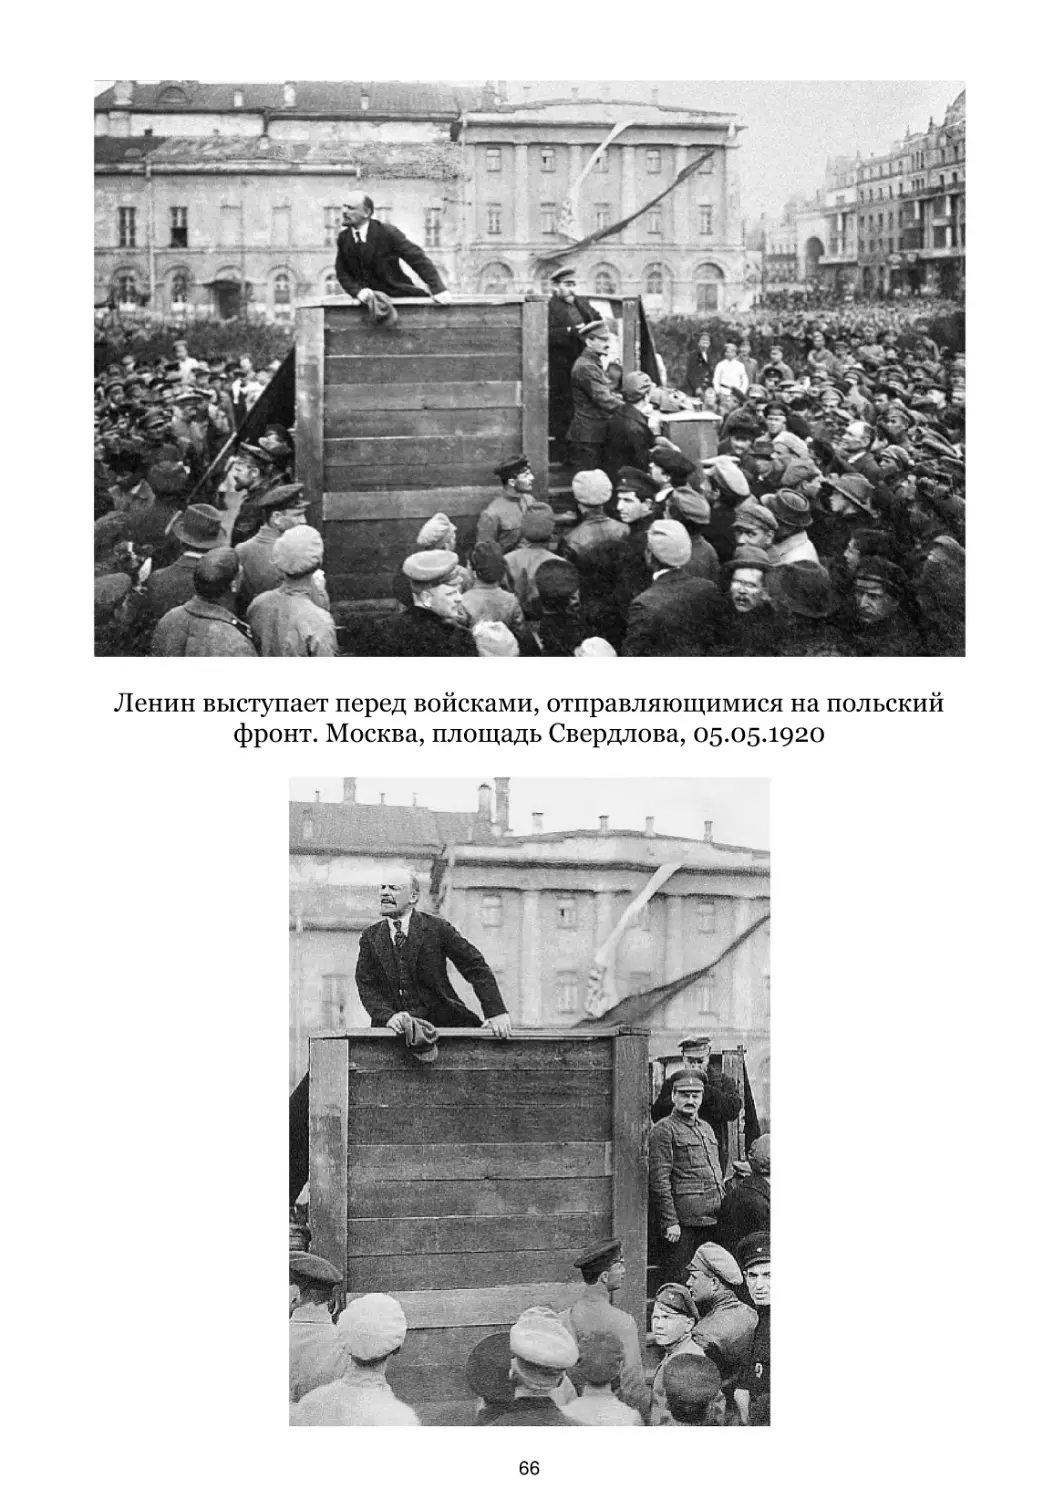 Ленин выступает перед войсками, отправляющимися на польский фронт. 05.05.1920